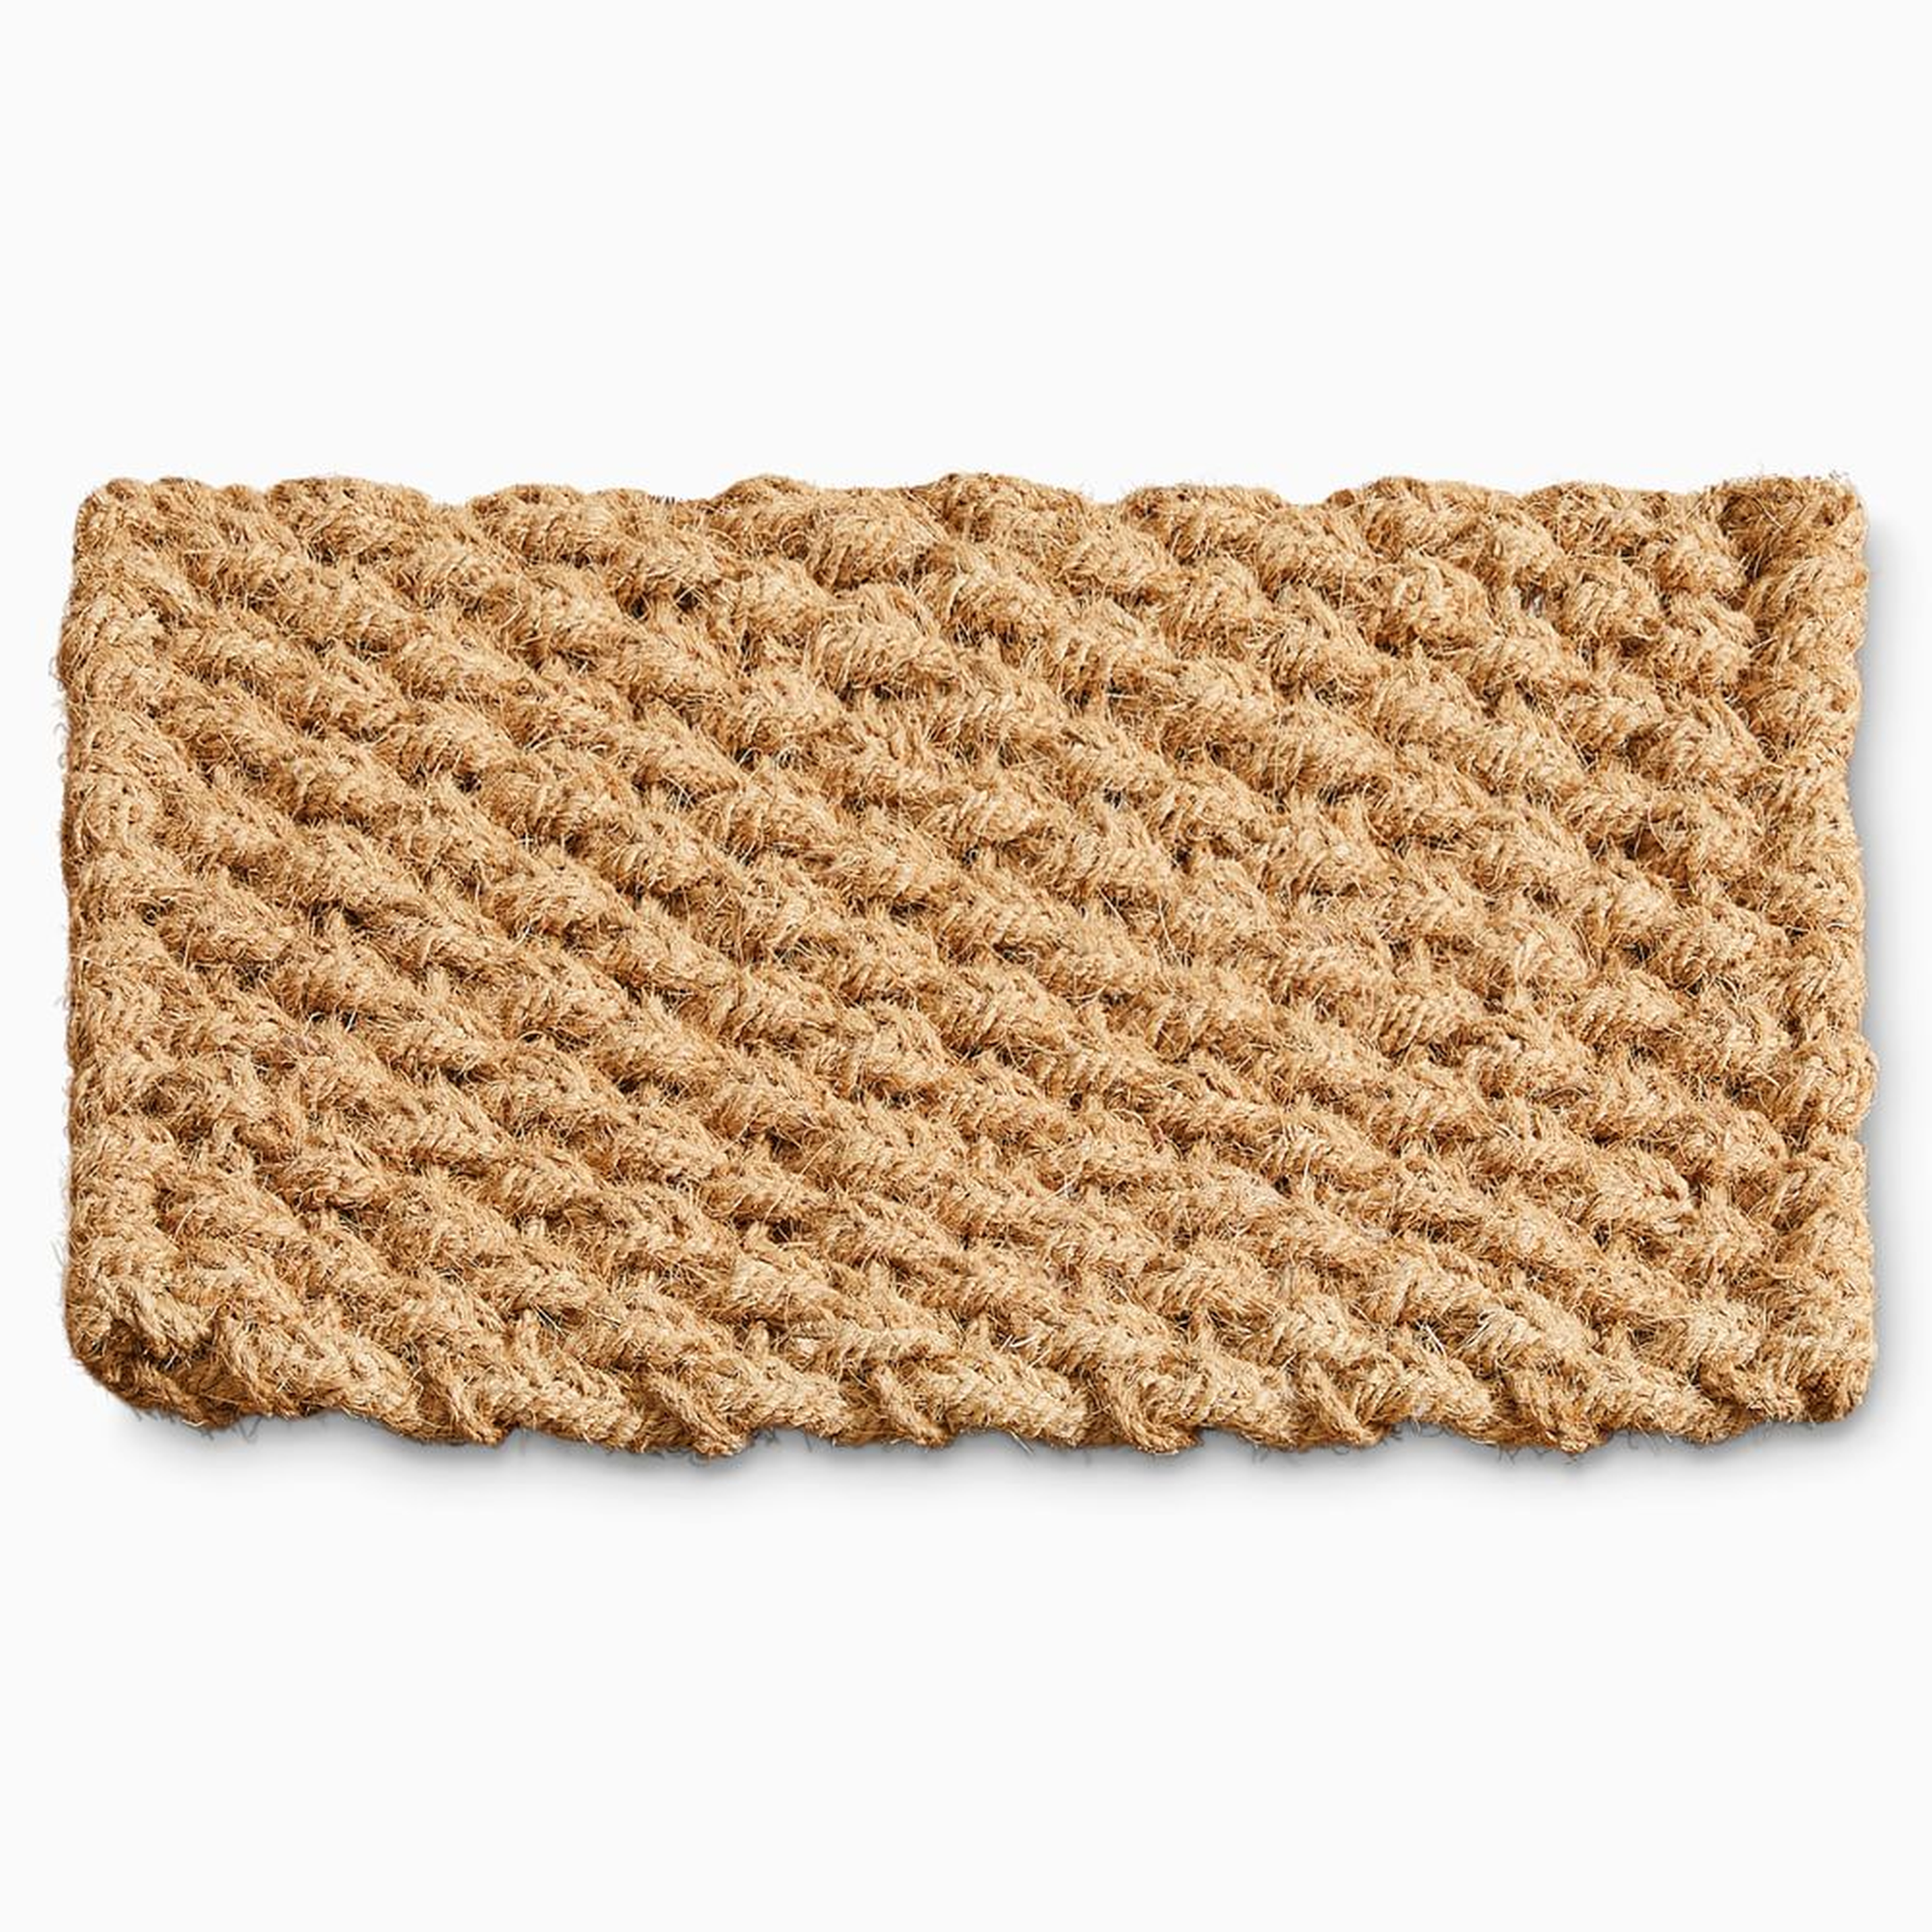 Solid Woven Doormat, 18x30, Natural - West Elm